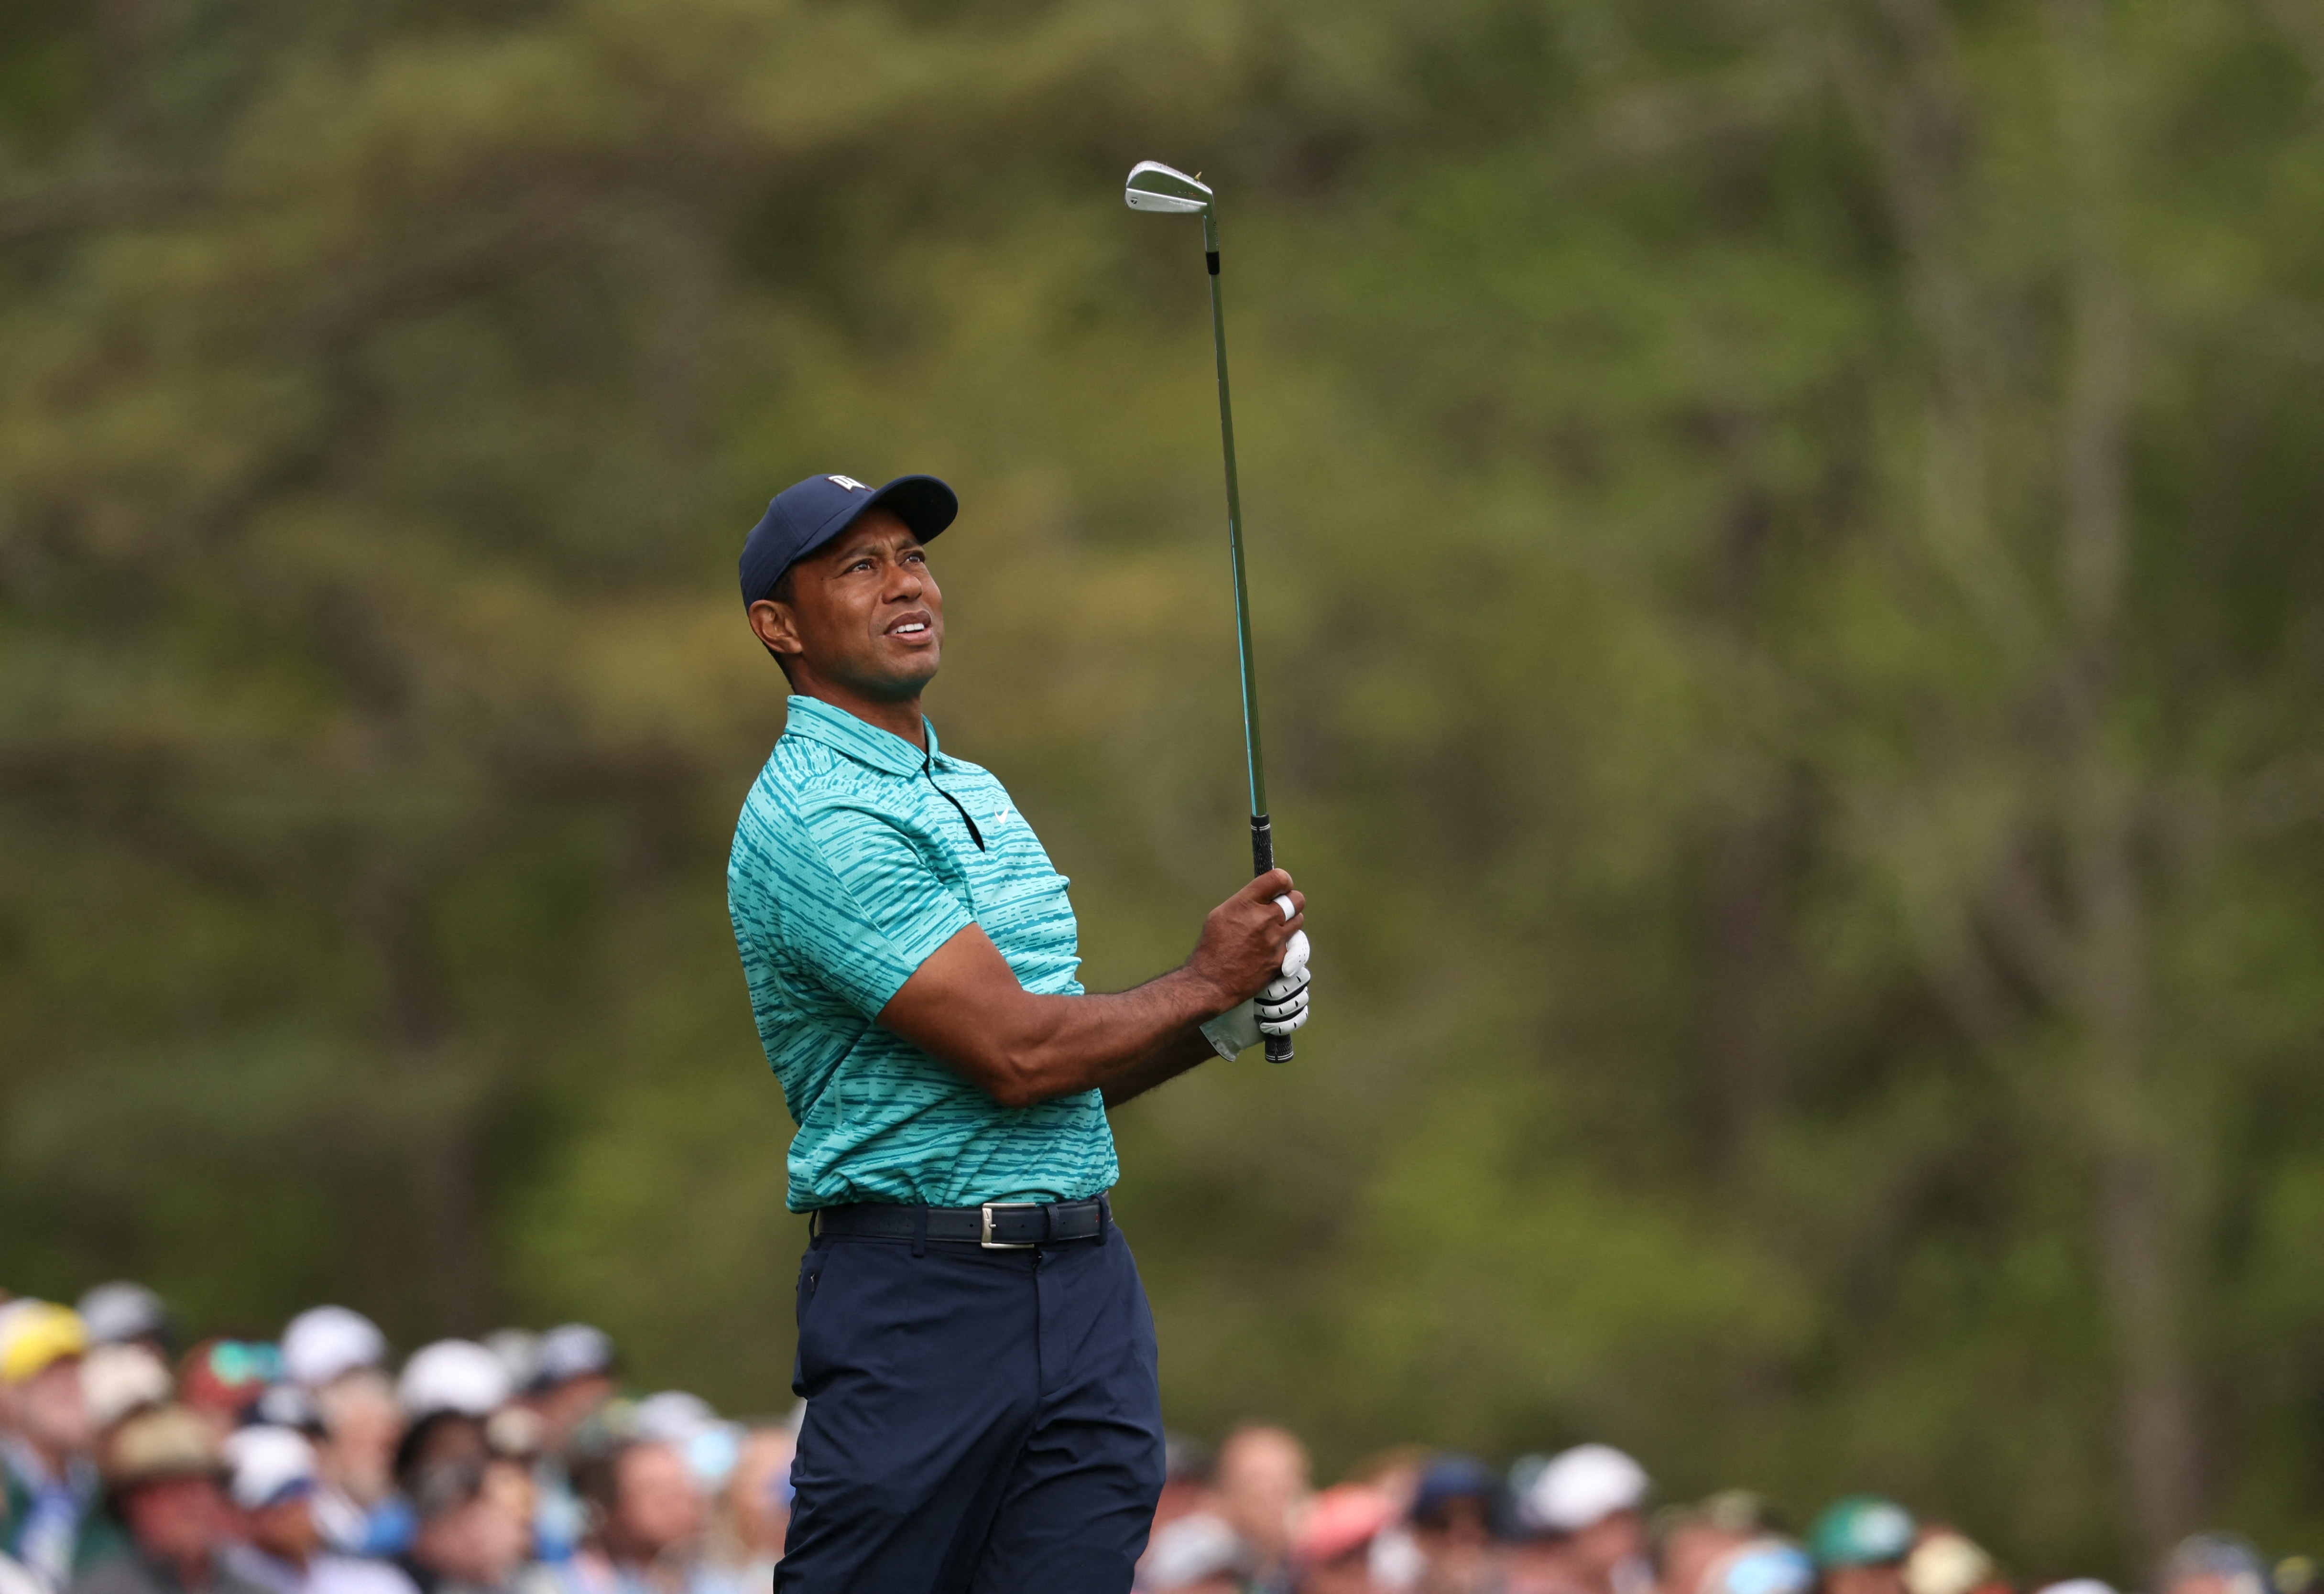 Llega el PGA Championship, segunda gran parada de la temporada de golf: la presencia de Tiger Woods y el nombre que promete eclipsarlo